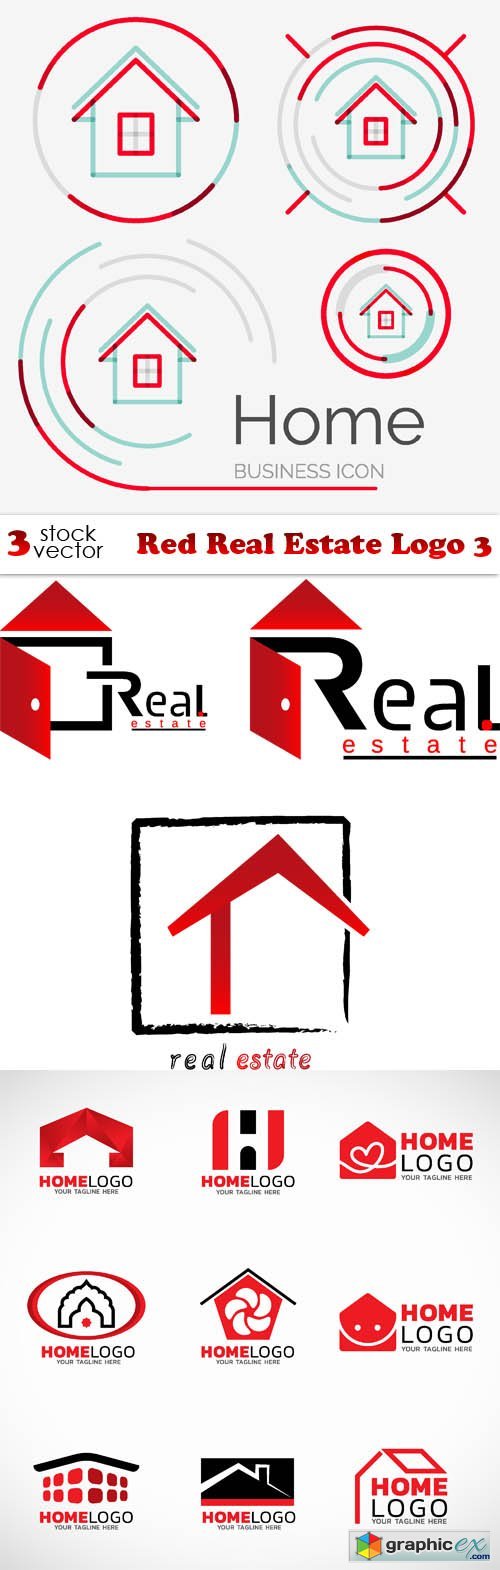 Red Real Estate Logo 3